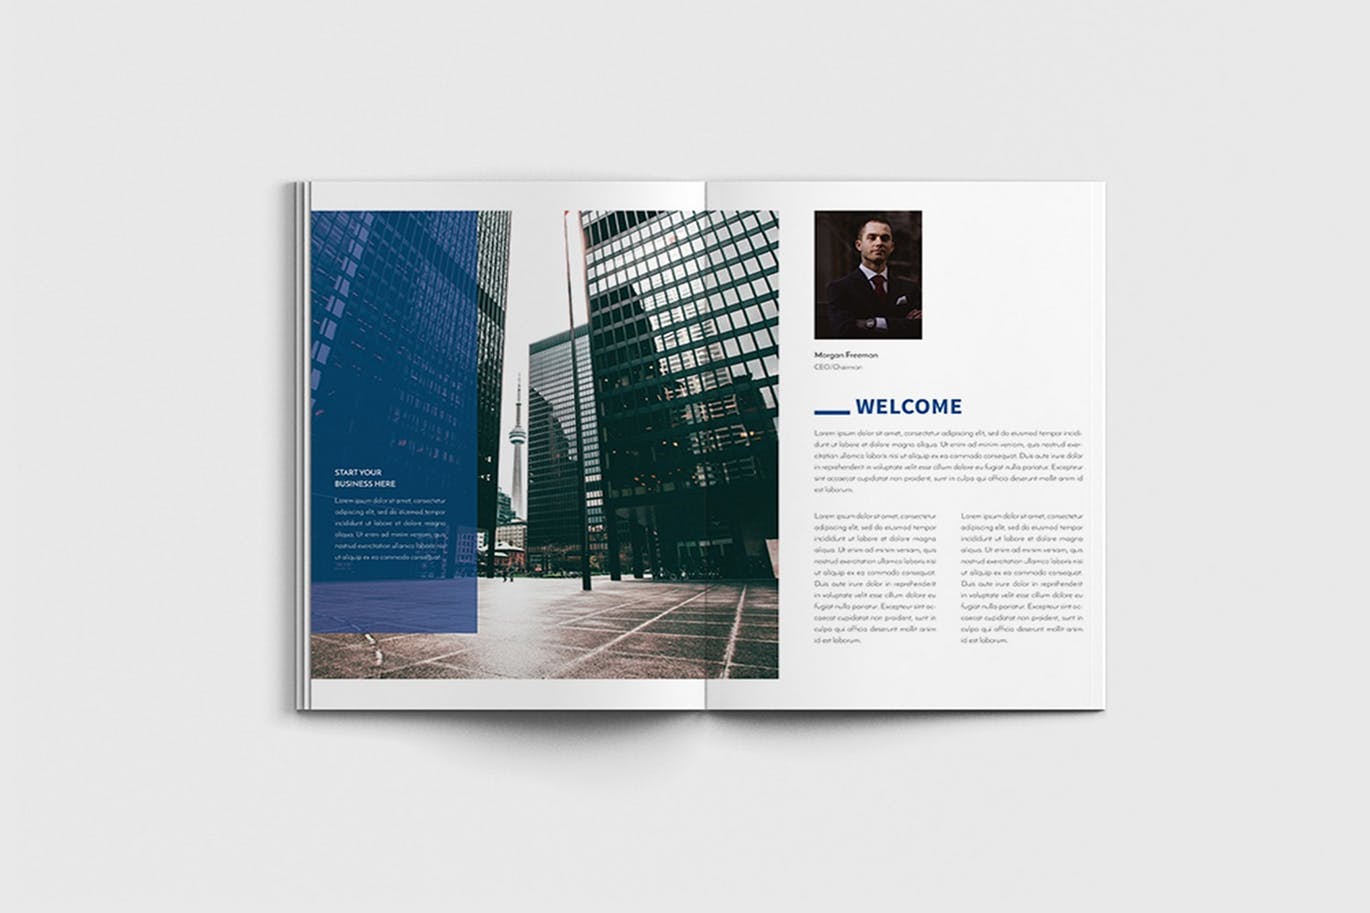 商业计划书/企业简介宣传画册设计模板 Walkers – A4 Business Brochure Template插图(1)